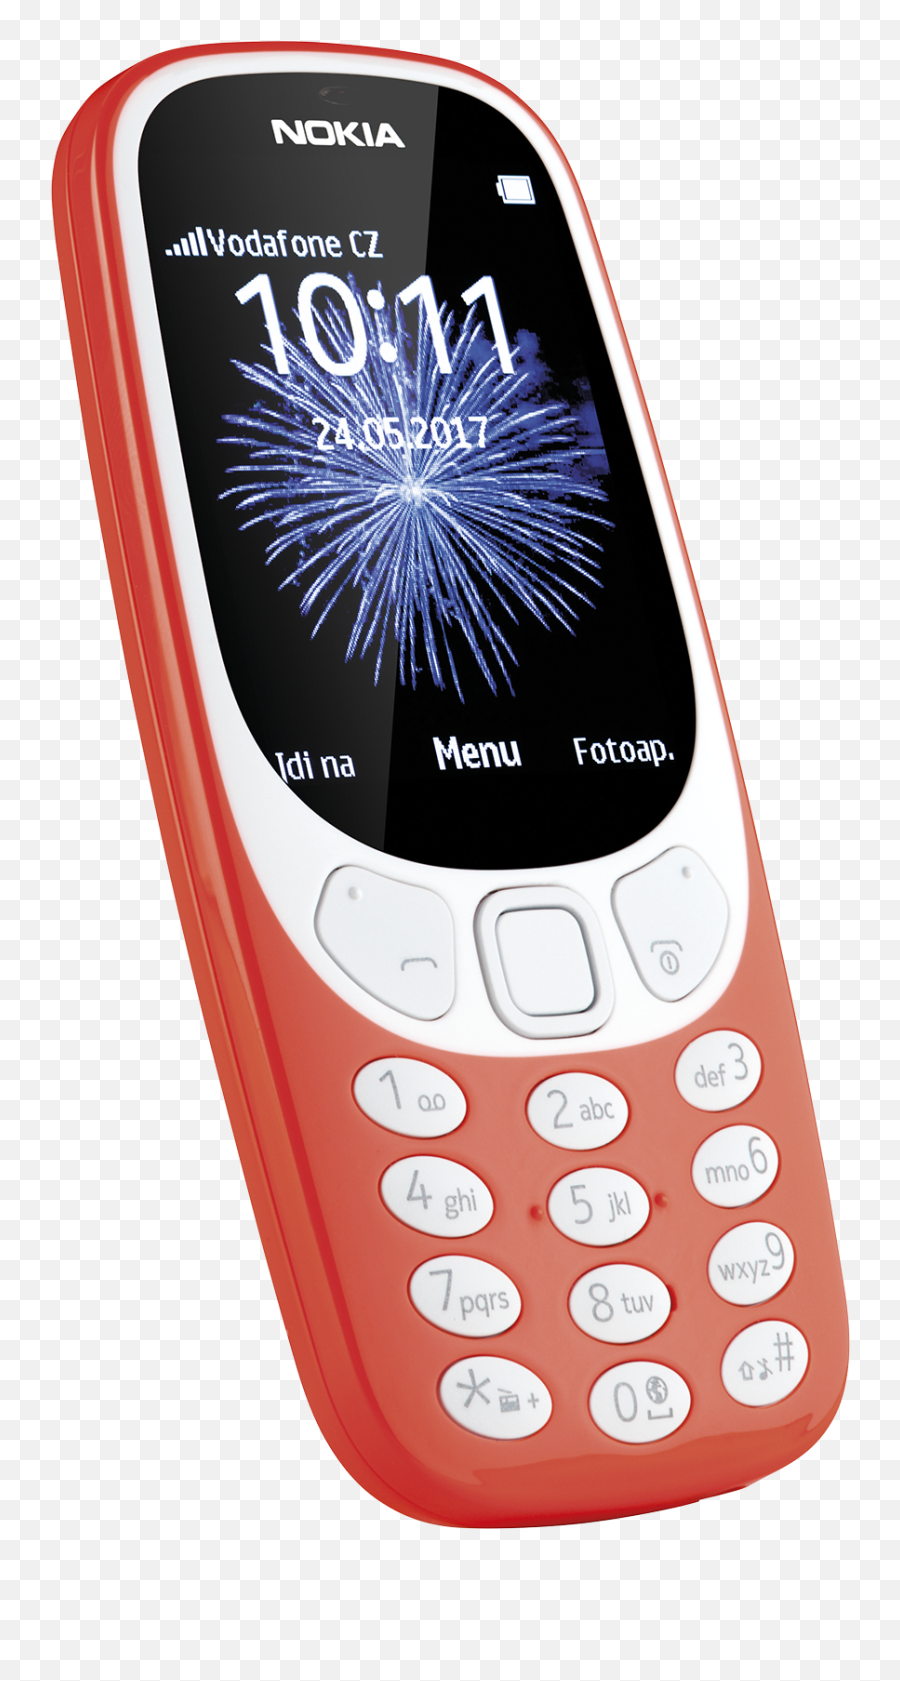 Download Nokia - Mobile Phone Png Image With No Background Mobil Nokia Pro Seniory,Nokia Lumia Icon